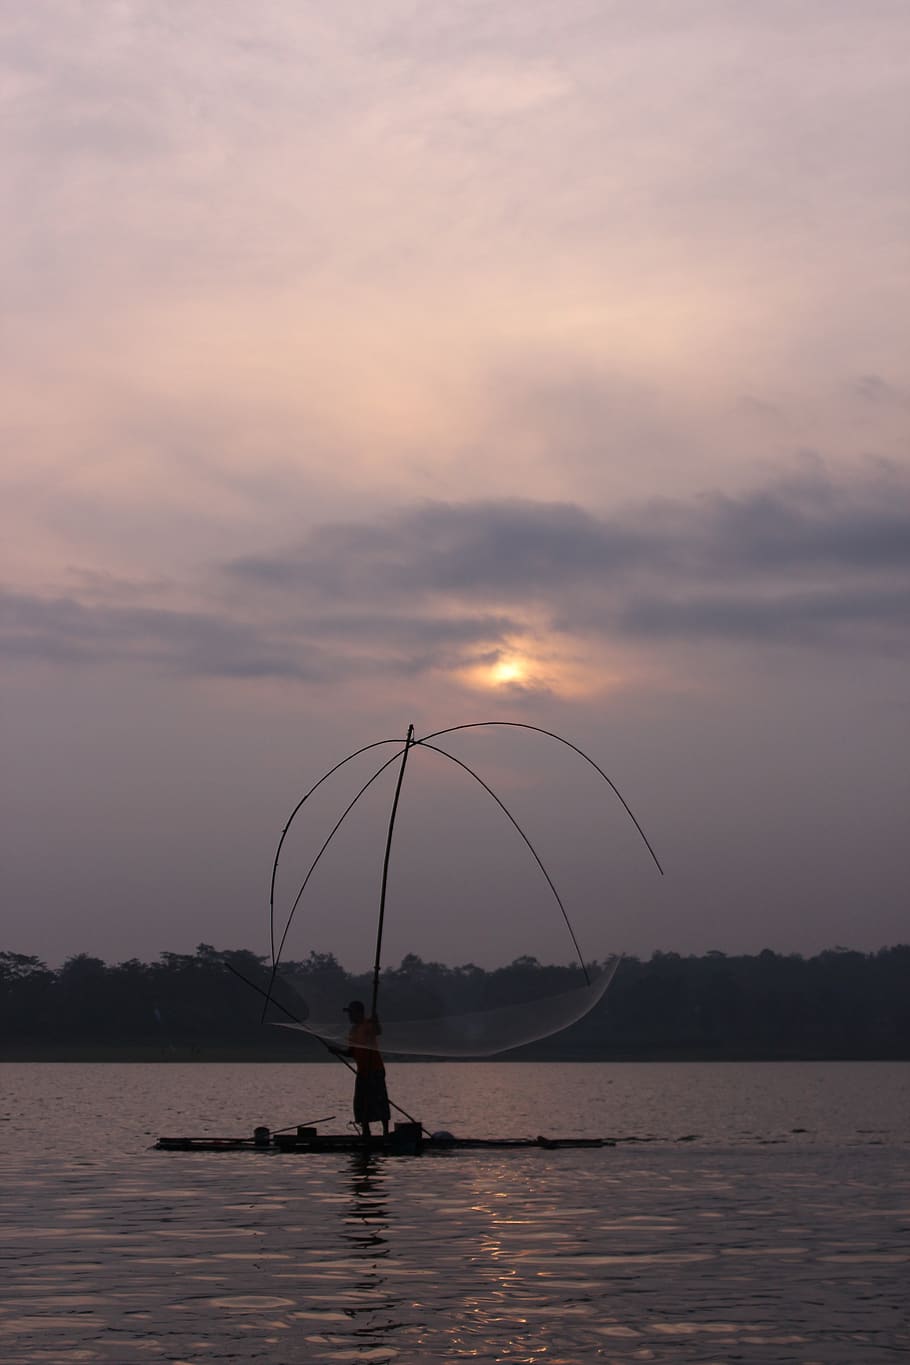 pescadores, el sol se hundió, temporada, lago, indonesio, agua, cielo, puesta de sol, belleza en la naturaleza, frente al mar